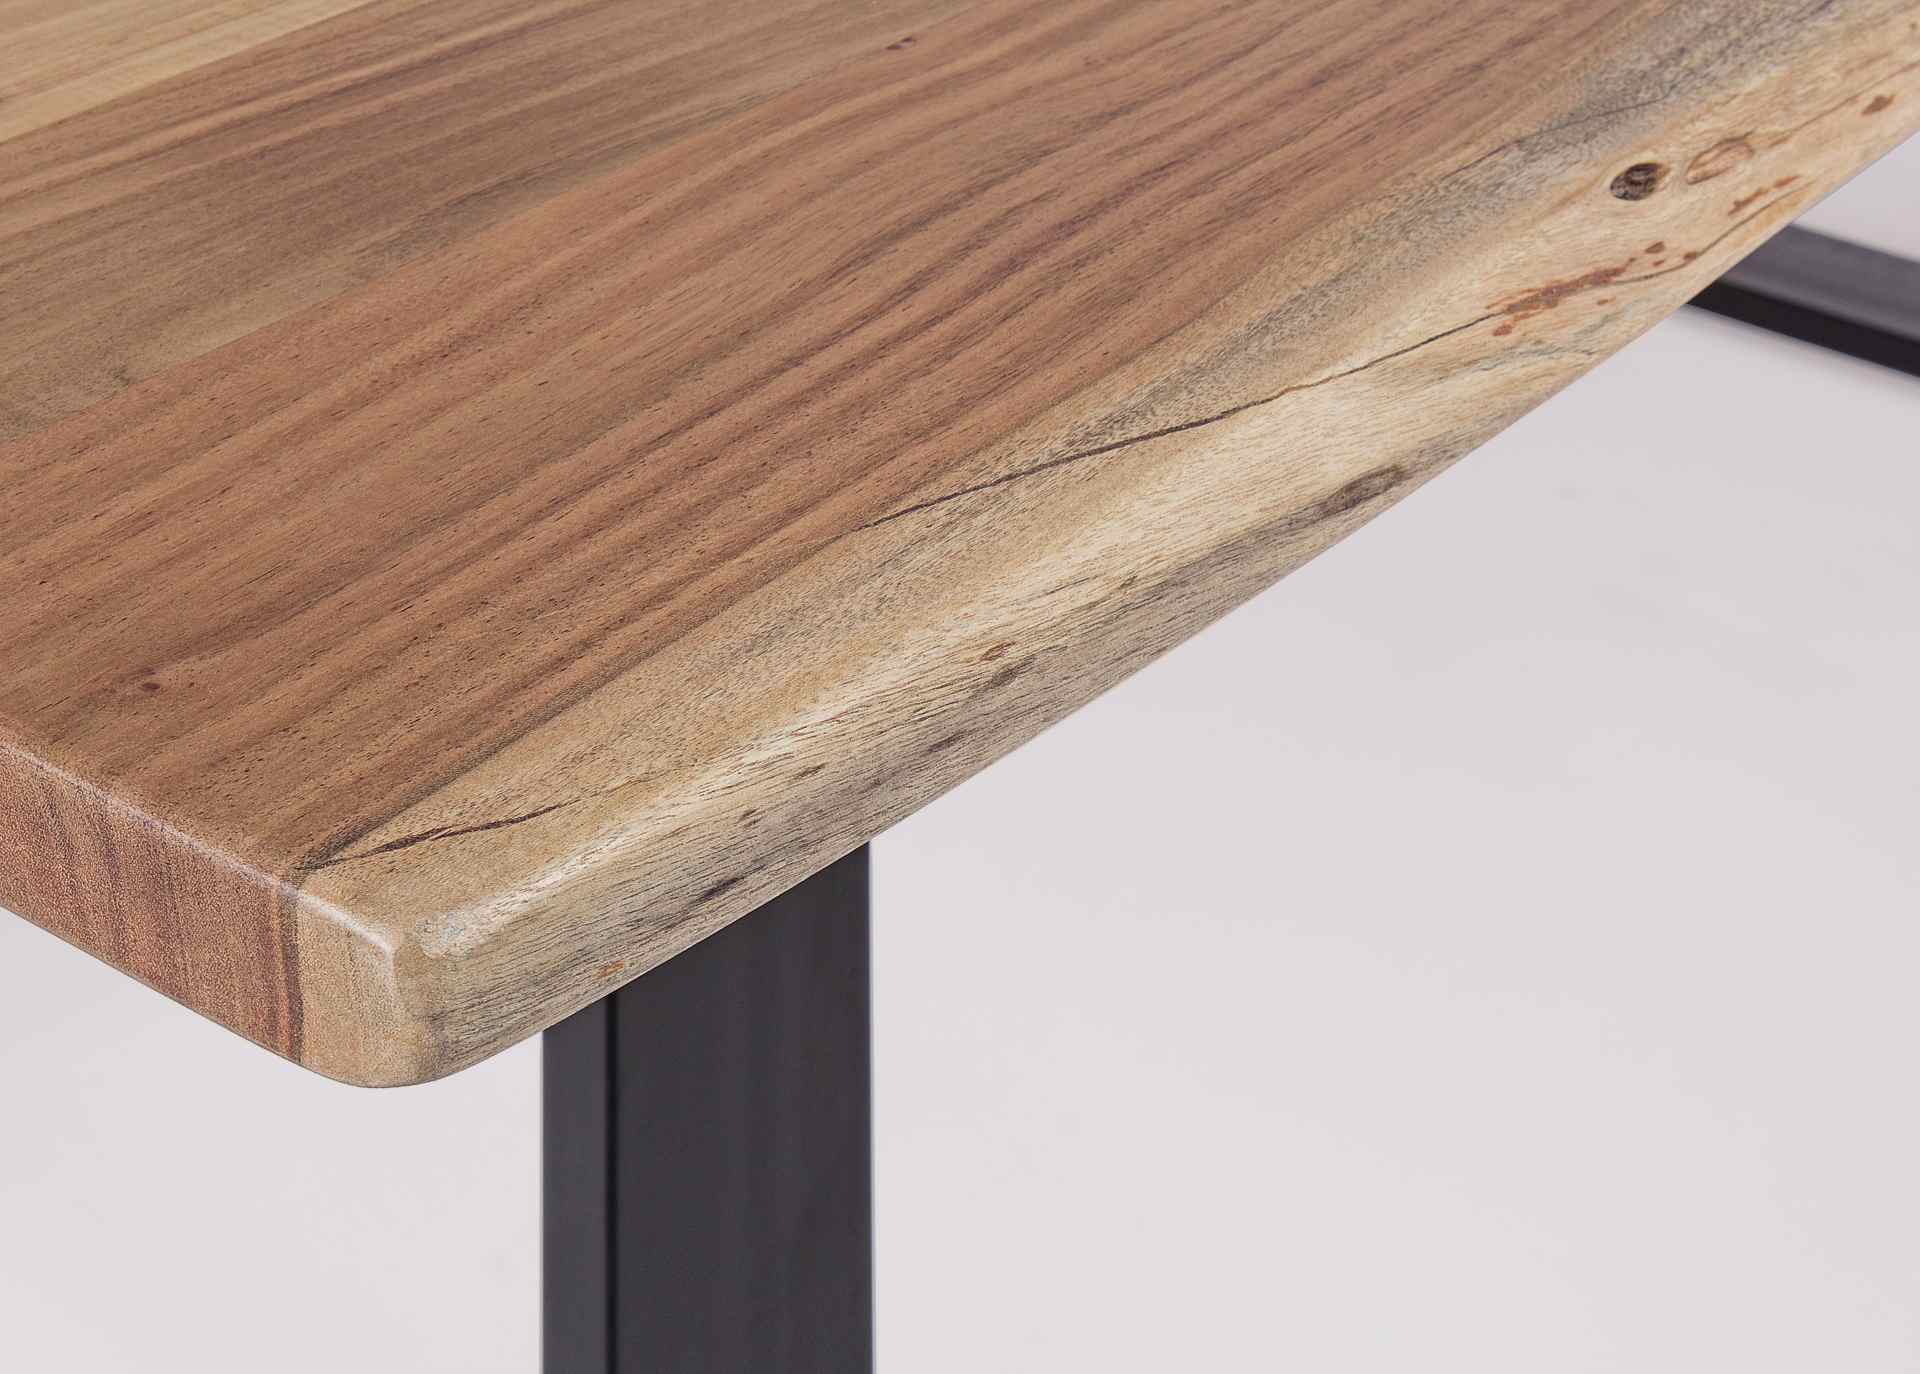 Der Esstisch Artur überzeugt mit seinem moderndem Design. Gefertigt wurde er aus Akazienholz, welches einen natürlichen Farbton besitzt. Das Gestell des Tisches ist aus Metall und ist in eine schwarze Farbe. Der Tisch besitzt eine Breite von 200 cm.